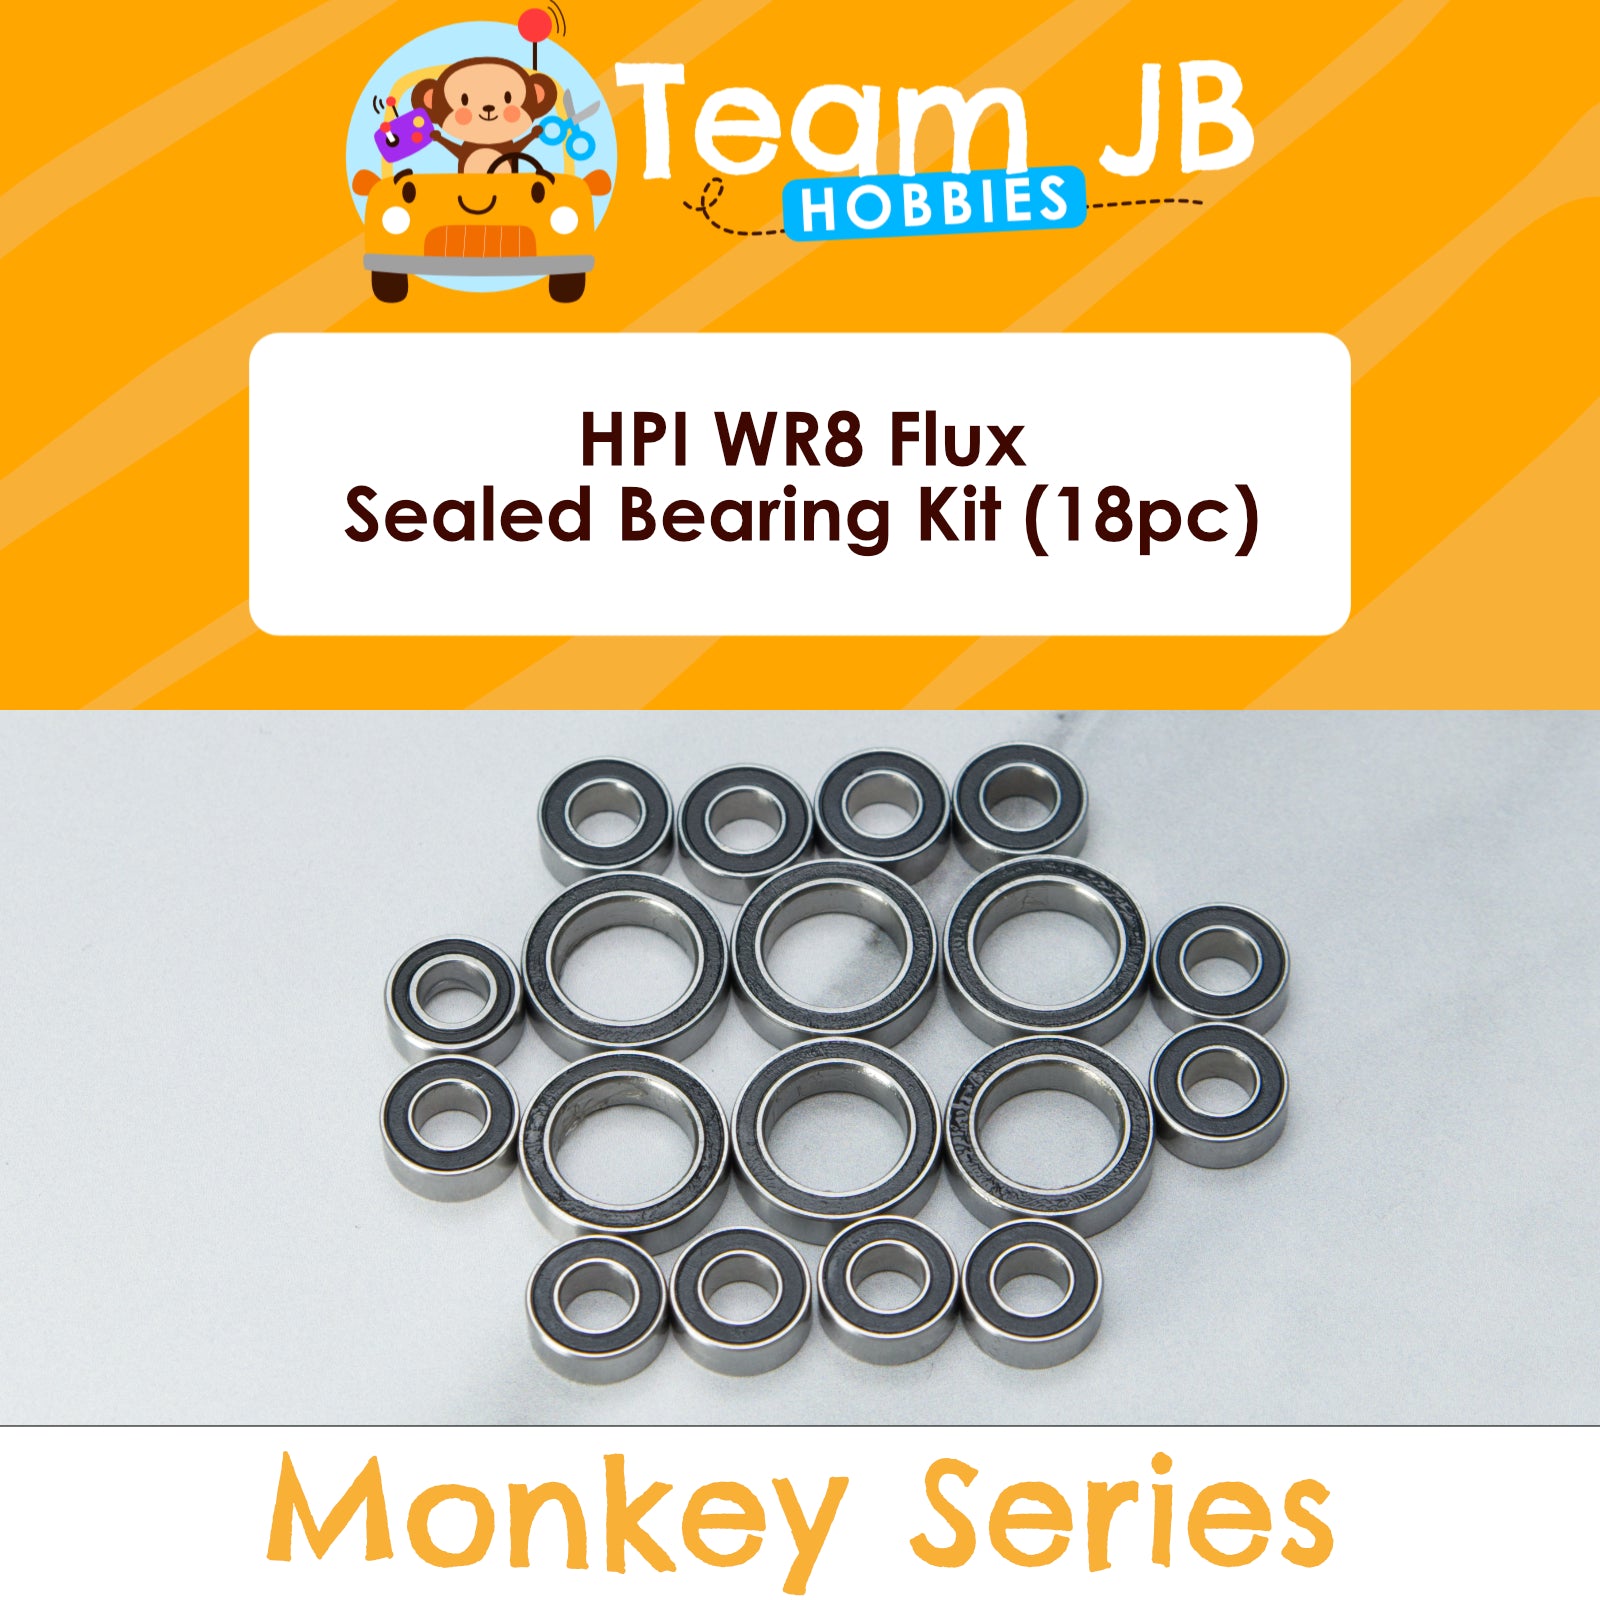 HPI WR8 Flux - Sealed Bearing Kit